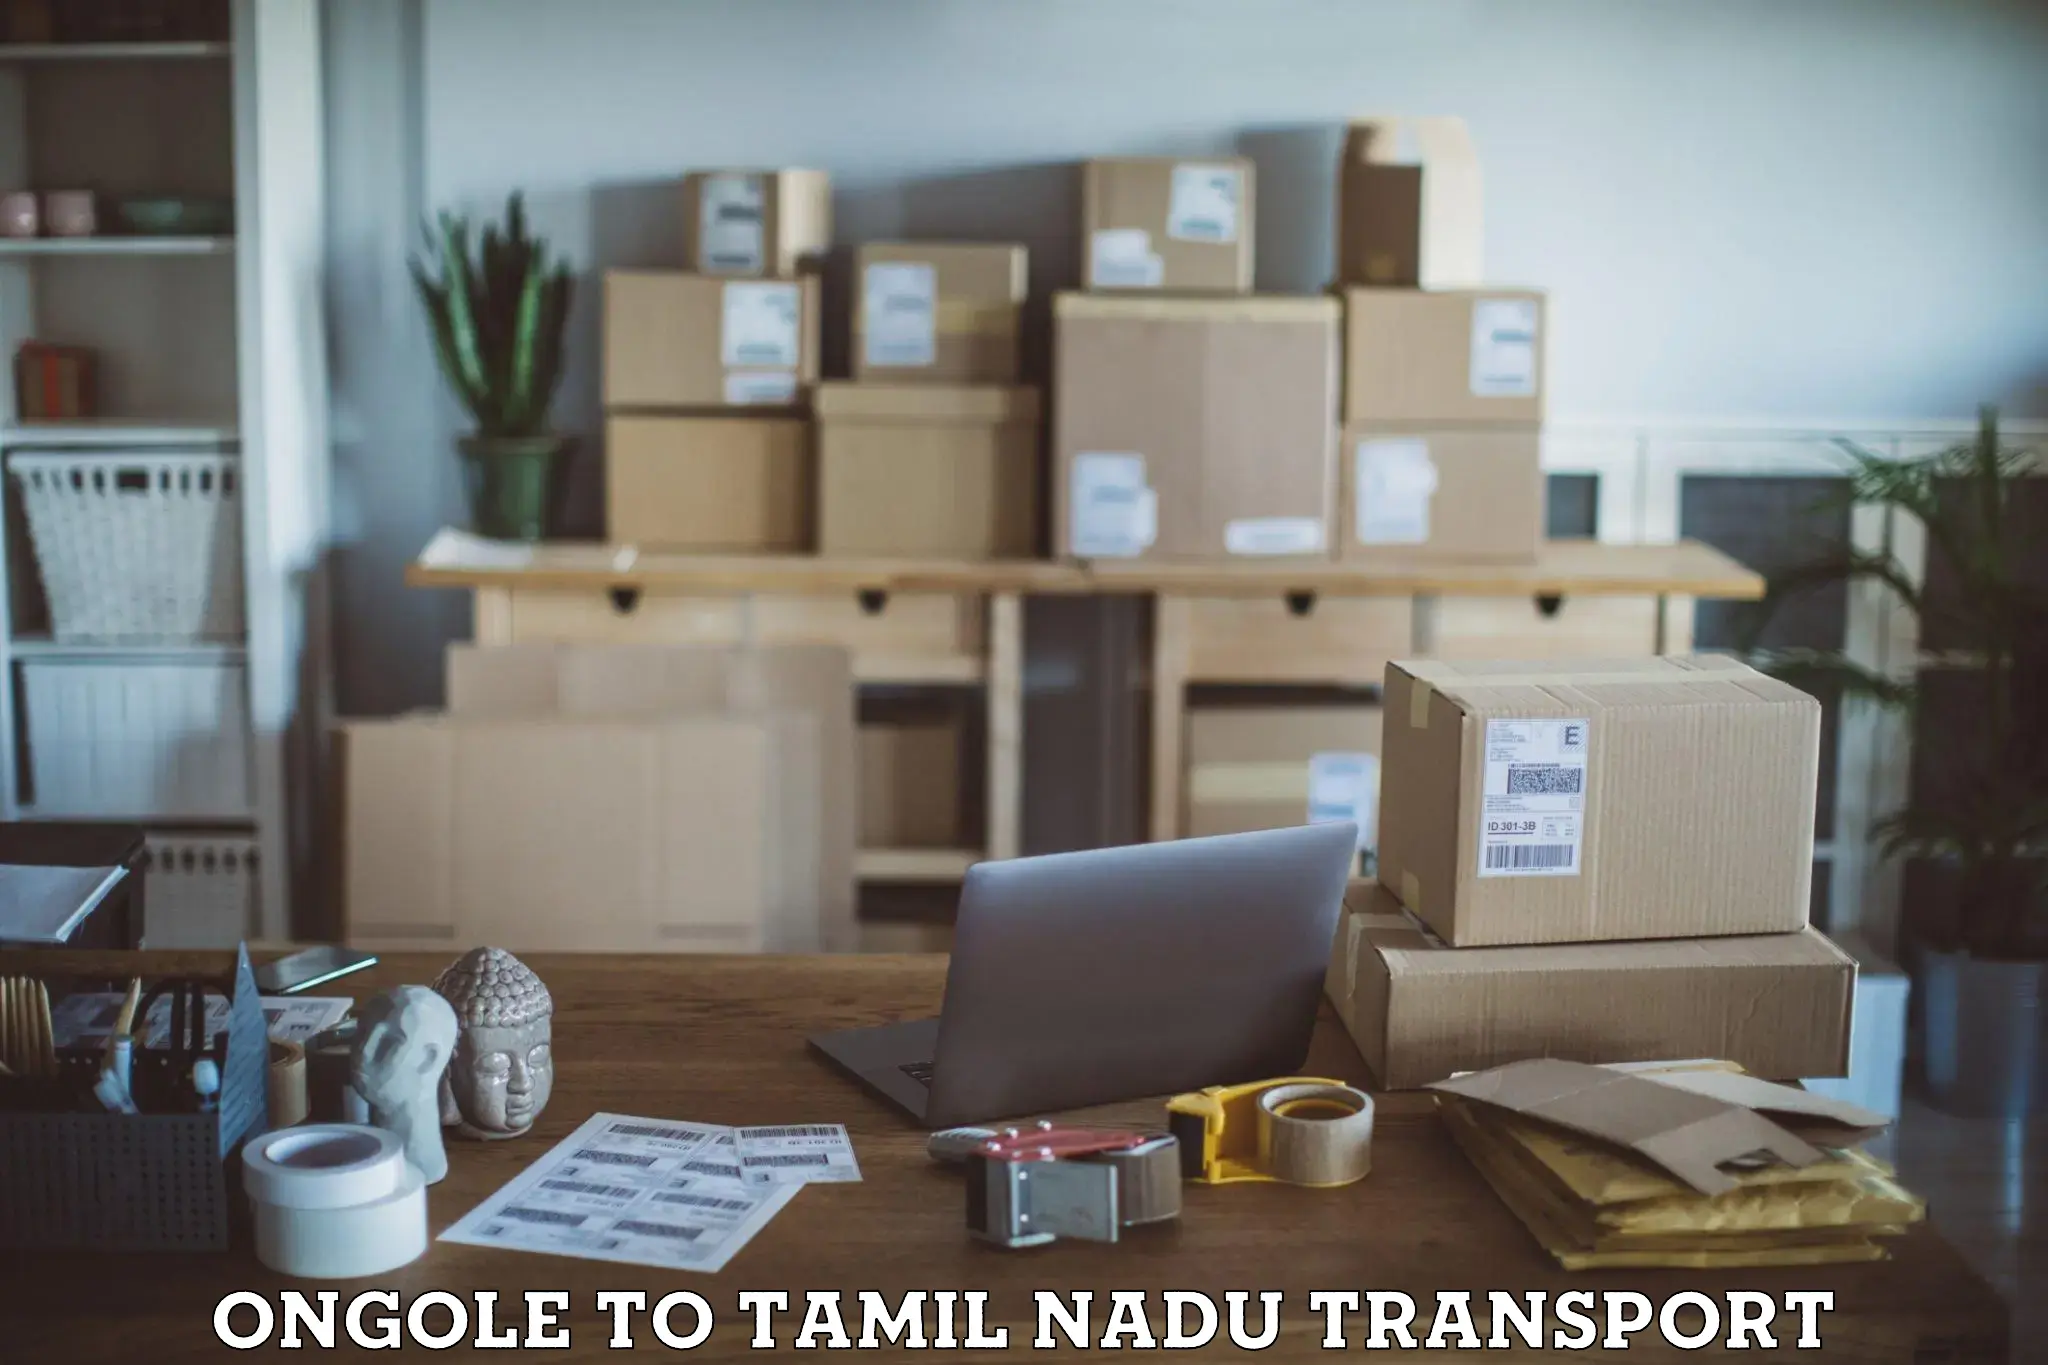 Nearest transport service Ongole to Tamil Nadu